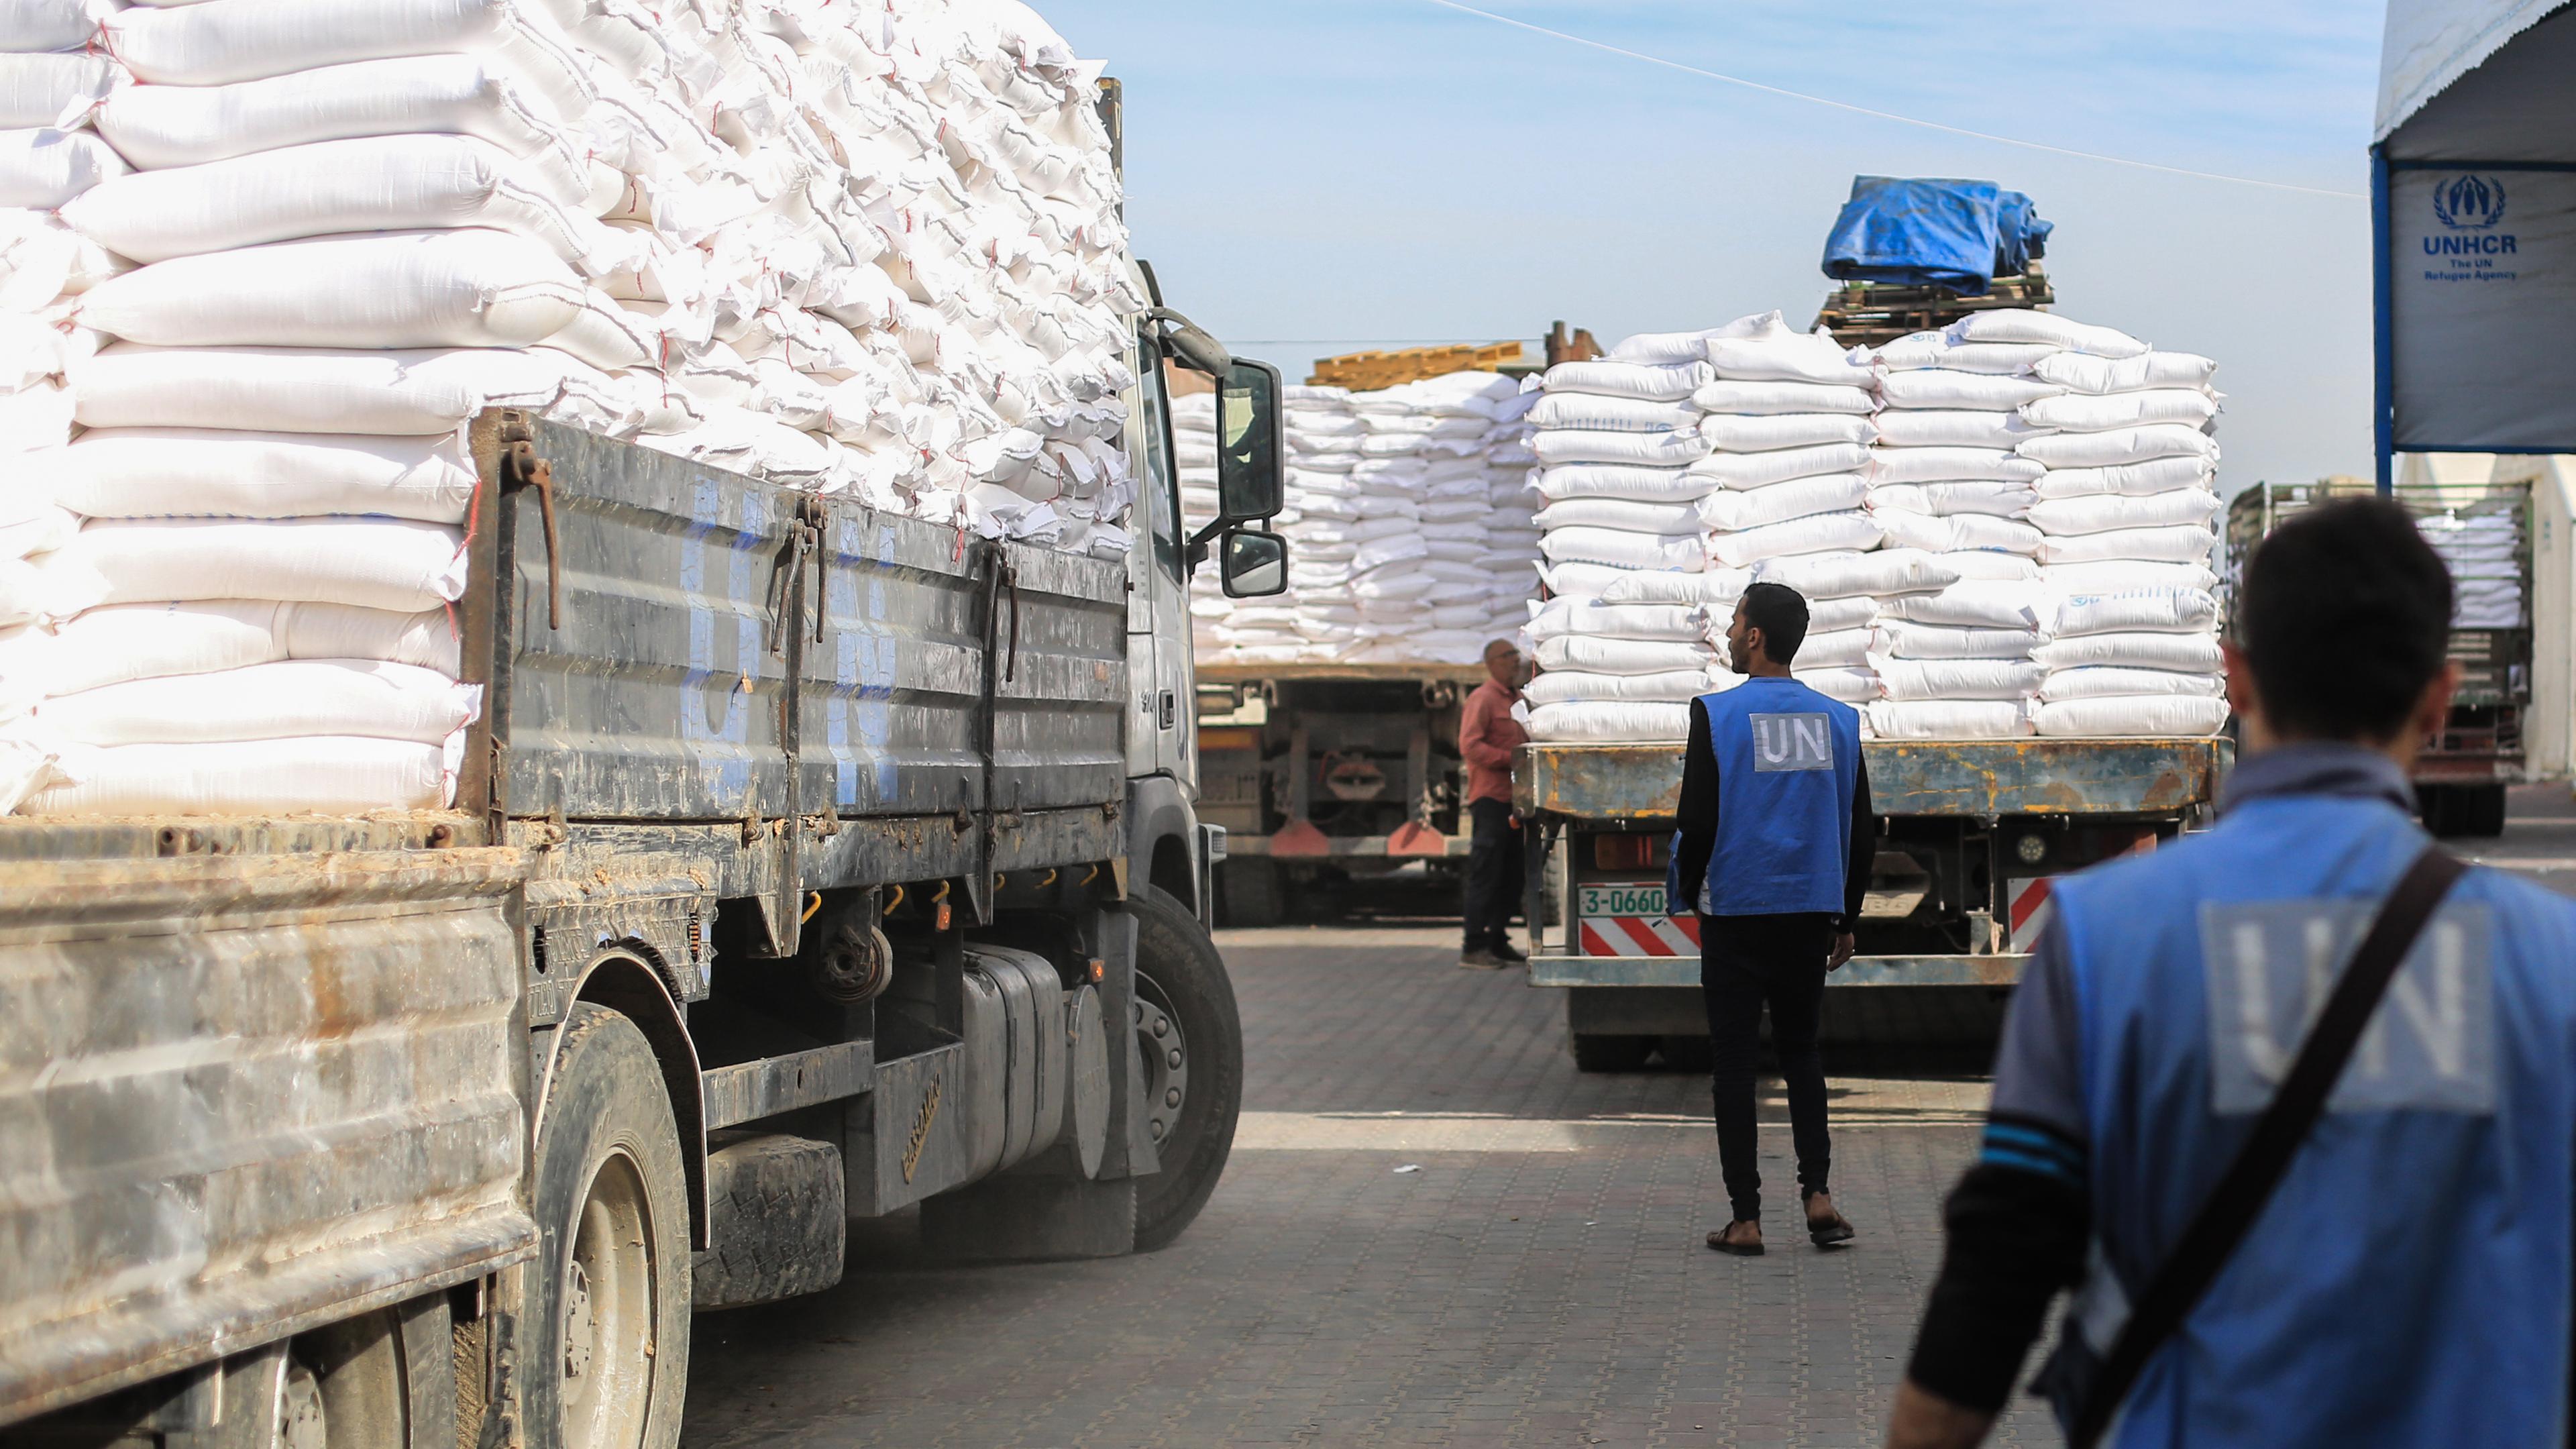 Zwei Mitarbeiter laden Mehlsäcke auf einen Lastwagen im Verteilungszentrum des Hilfswerks der Vereinten Nationen für Palästinaflüchtlinge (UNRWA)